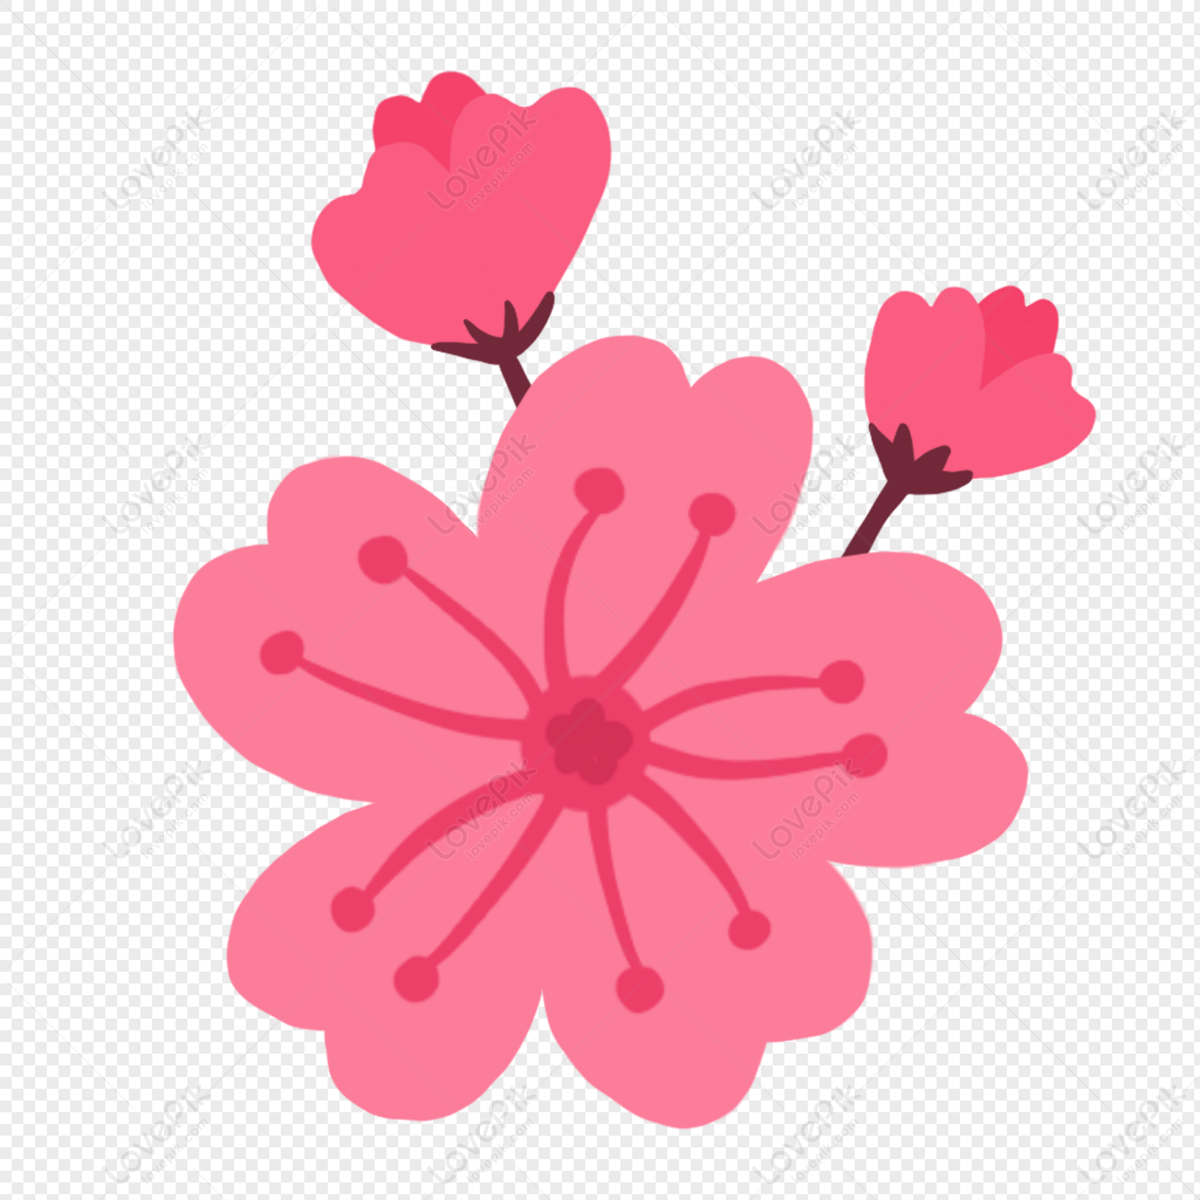 Hình ảnh hoa đào hoa đẹp tươi sáng Hand Painted Peach Blossoms PNG Transparent sẽ đem đến cho bạn sự khám phá vẻ đẹp trong sự tươi mới và đơn giản. Hãy ngắm nhìn điều đó thông qua hình ảnh này và cảm nhận sự tinh tế và thanh thoát như hoa đào.